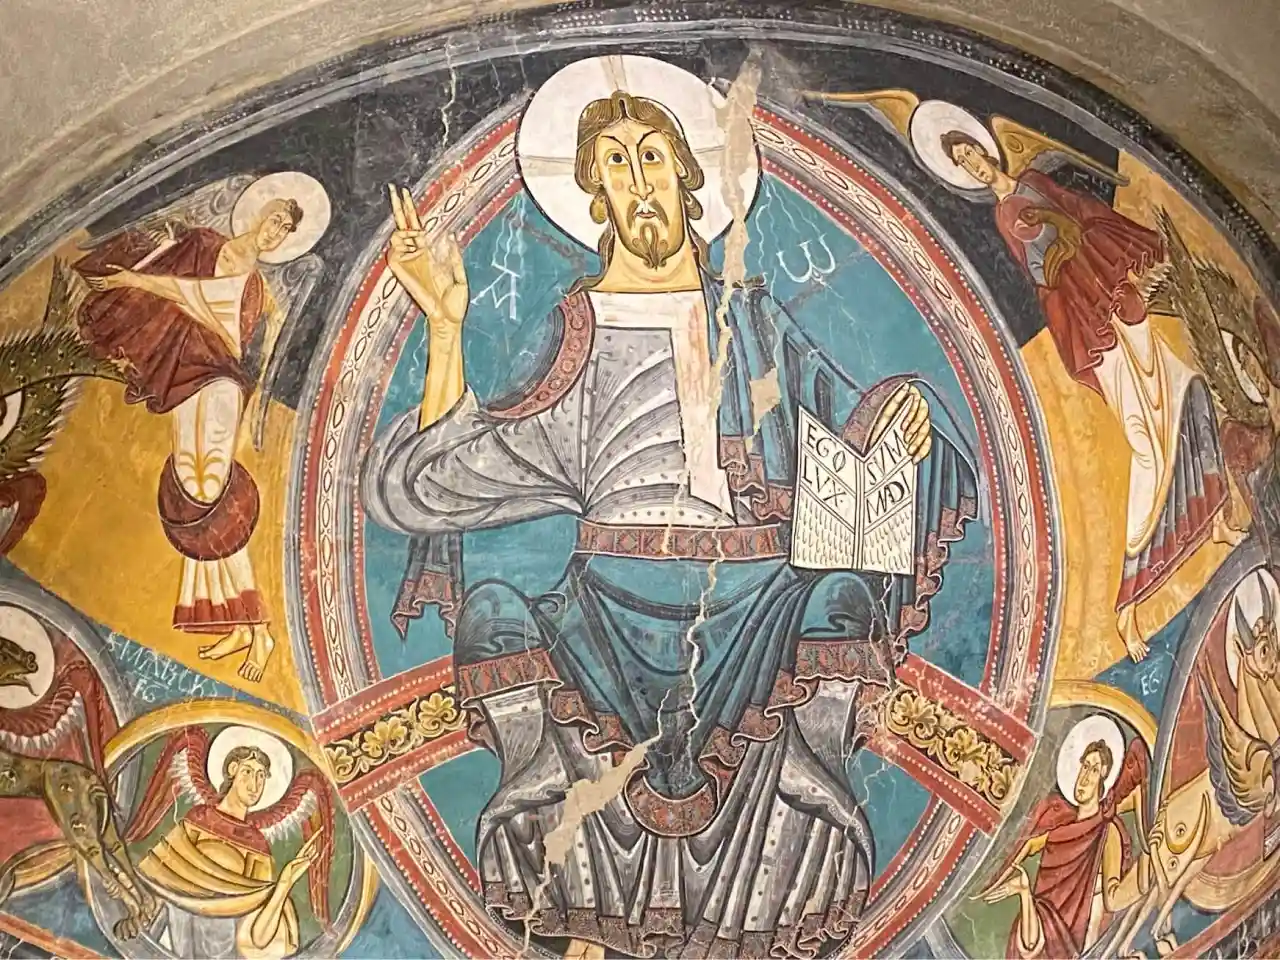 Romanesque murals at Museu Nacional d'Art de Catalunya